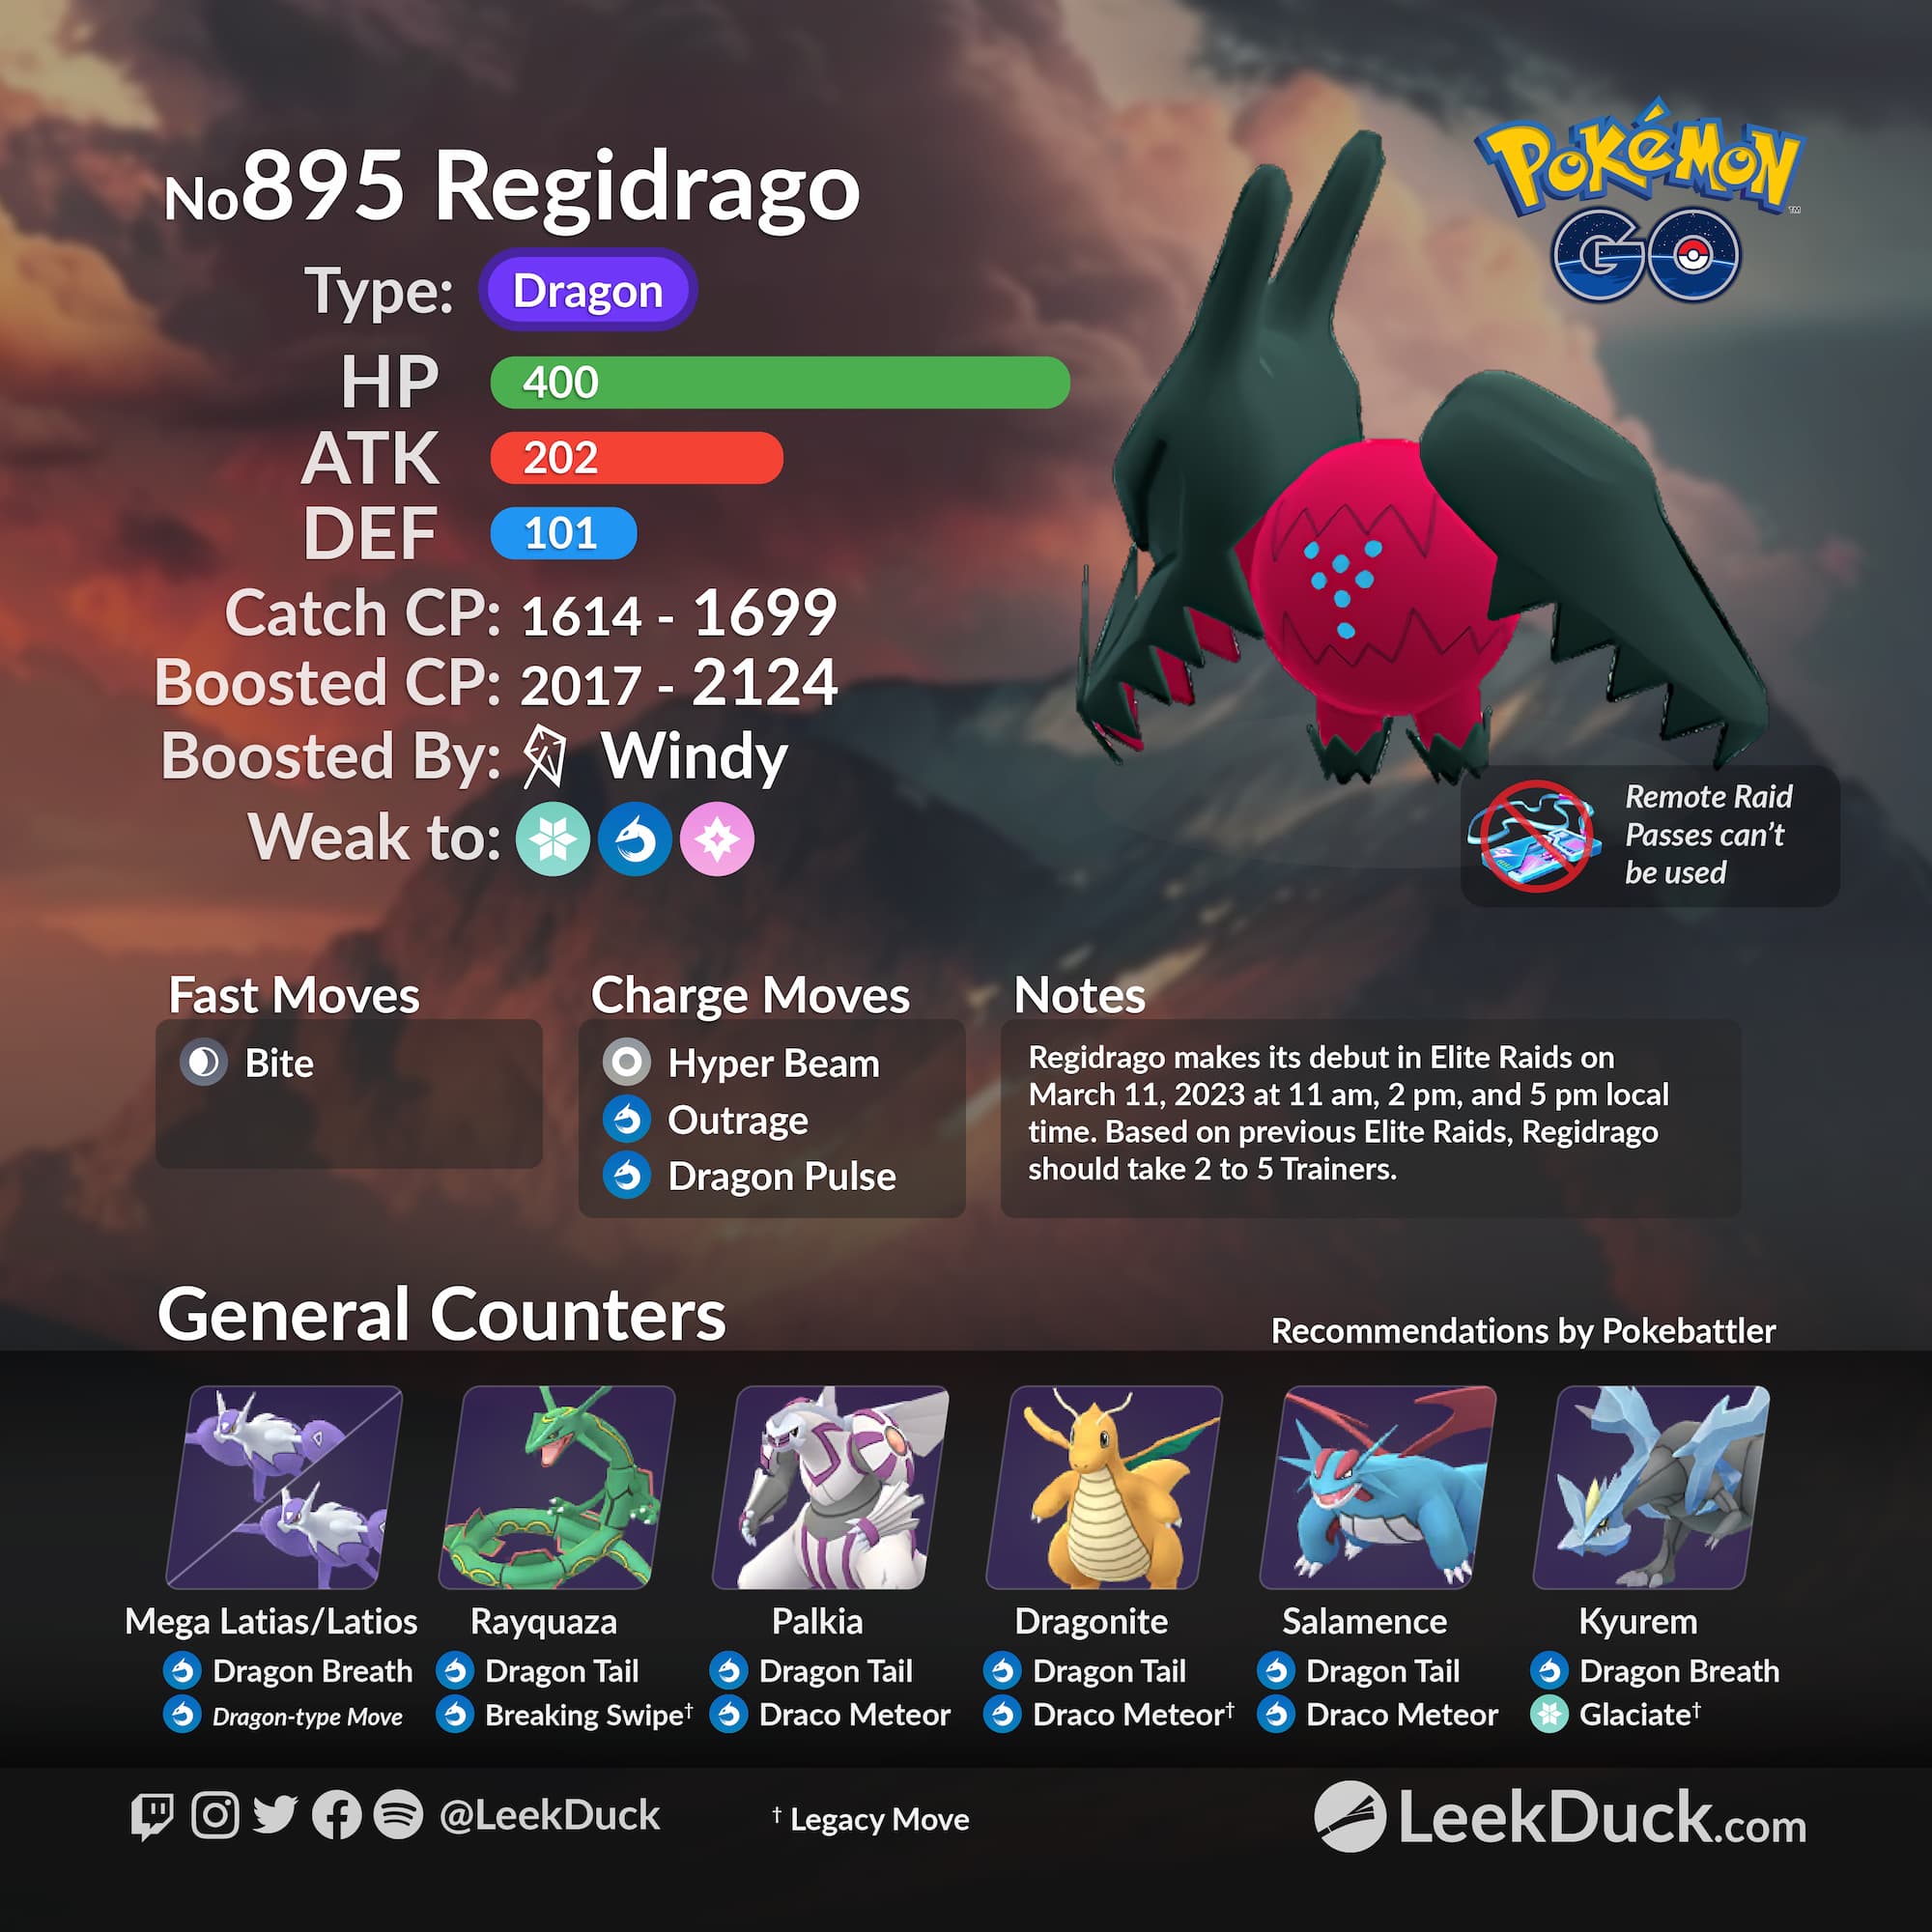 Pokémon Go Raids - Como funcionam as Raids, EX Raids, Raids